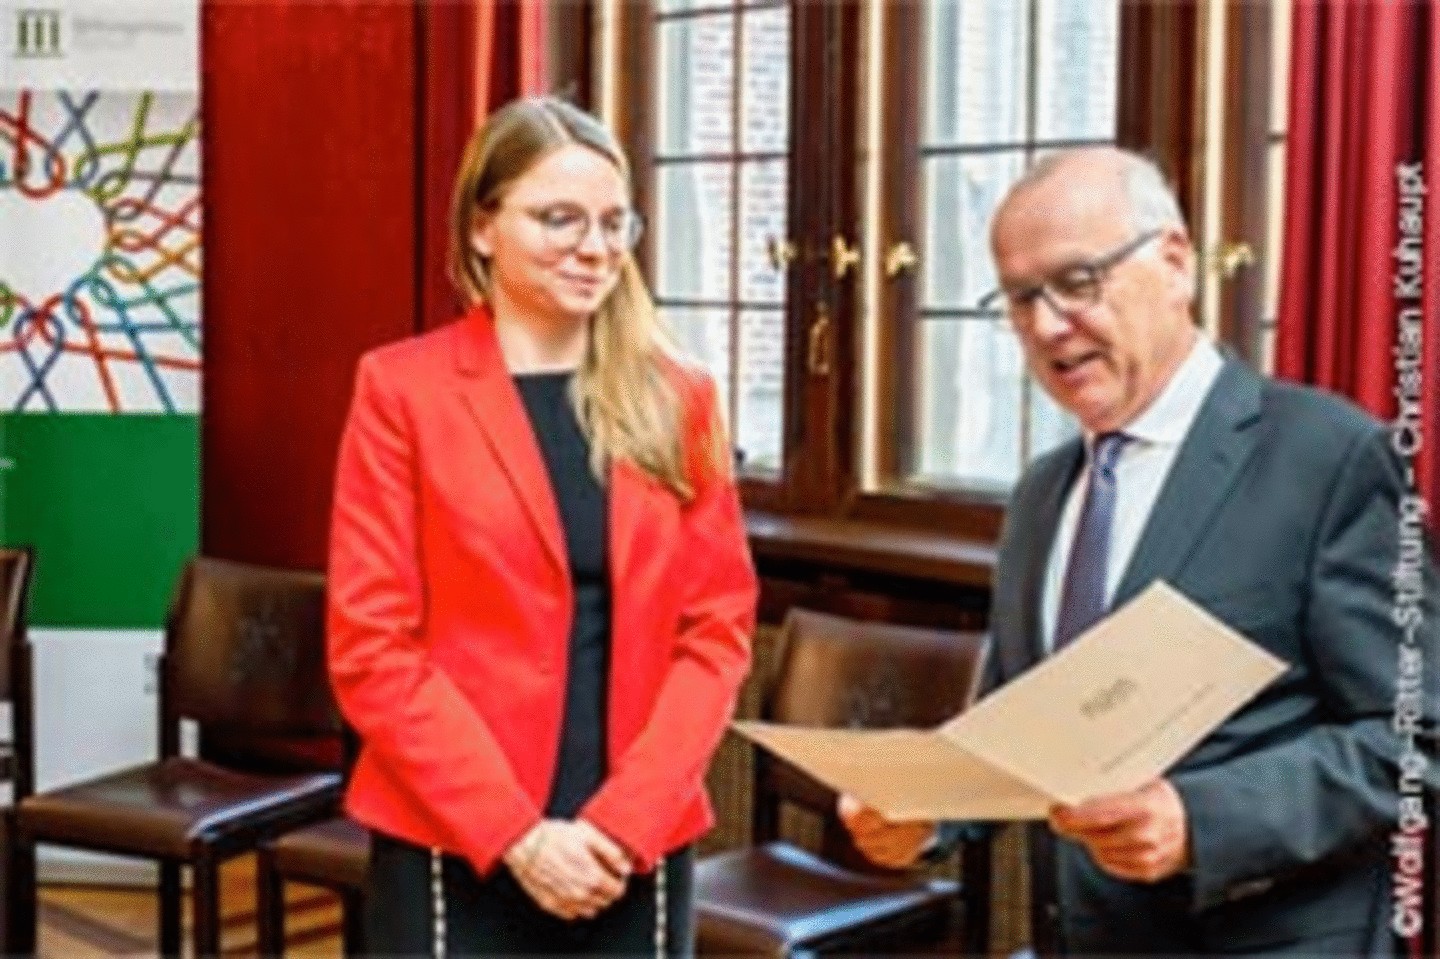 Digitalisierungsexpertin Dr. Katharina Drechsler in einer roten Jacke erhält ein Auszeichnungszertifikat von einem älteren Mann in einem Anzug in einem formellen Rahmen.